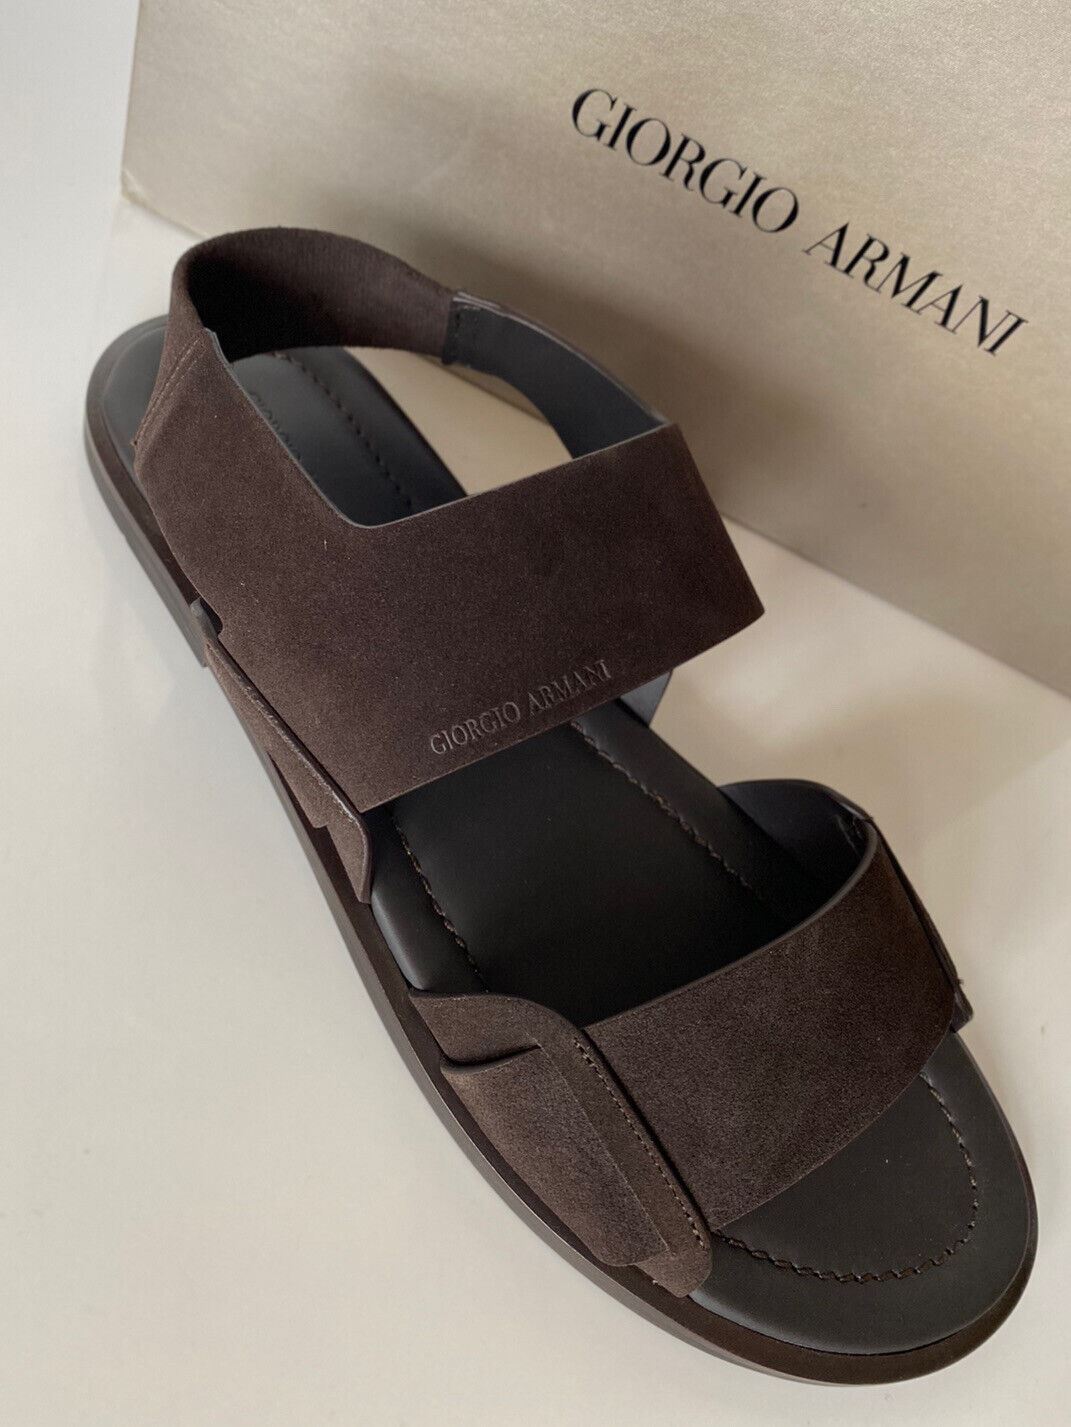 NIB 625 долларов США Giorgio Armani Коричневые замшевые/кожаные сандалии с ремешком на щиколотке 9 US X2P064 IT 